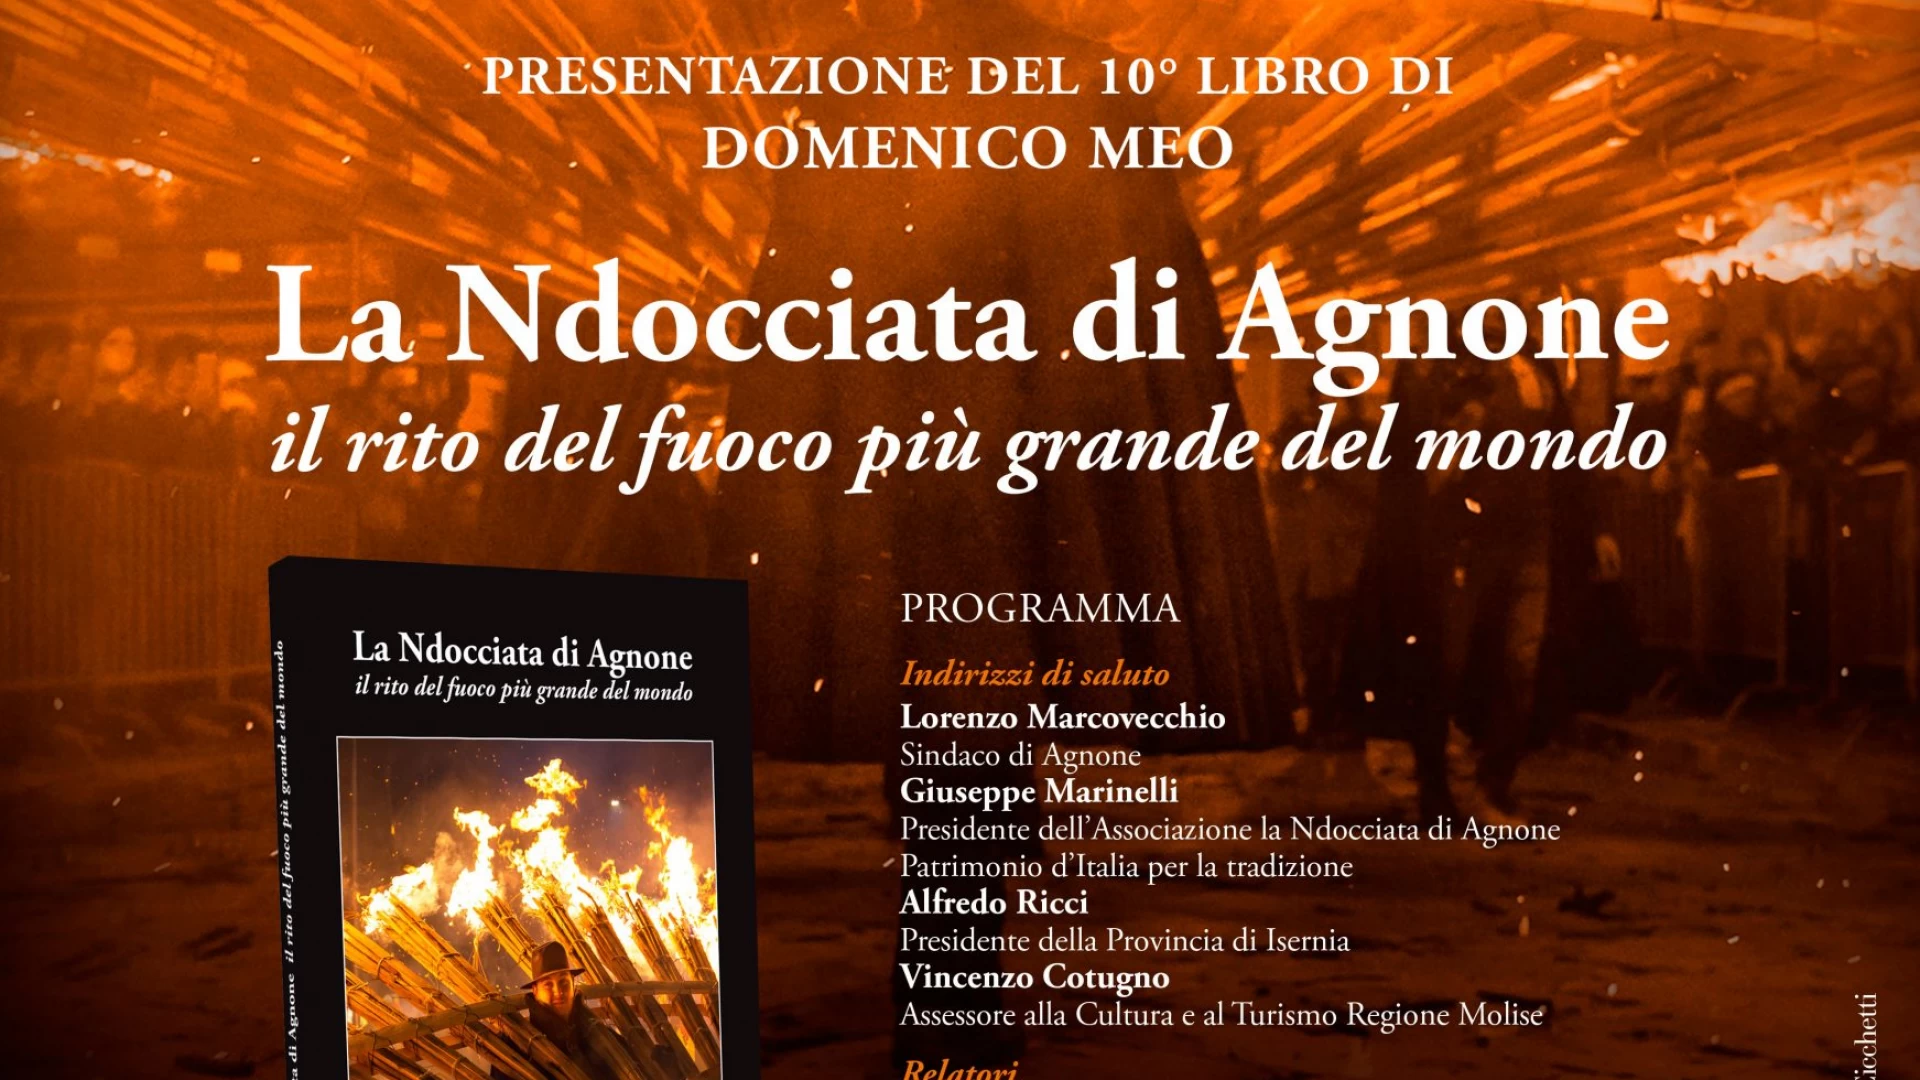 “La Ndocciata di Agnone”, il volume di Domenico Meo presentato al teatro Italoargentino. Evento in programma giovedì pomeriggio.